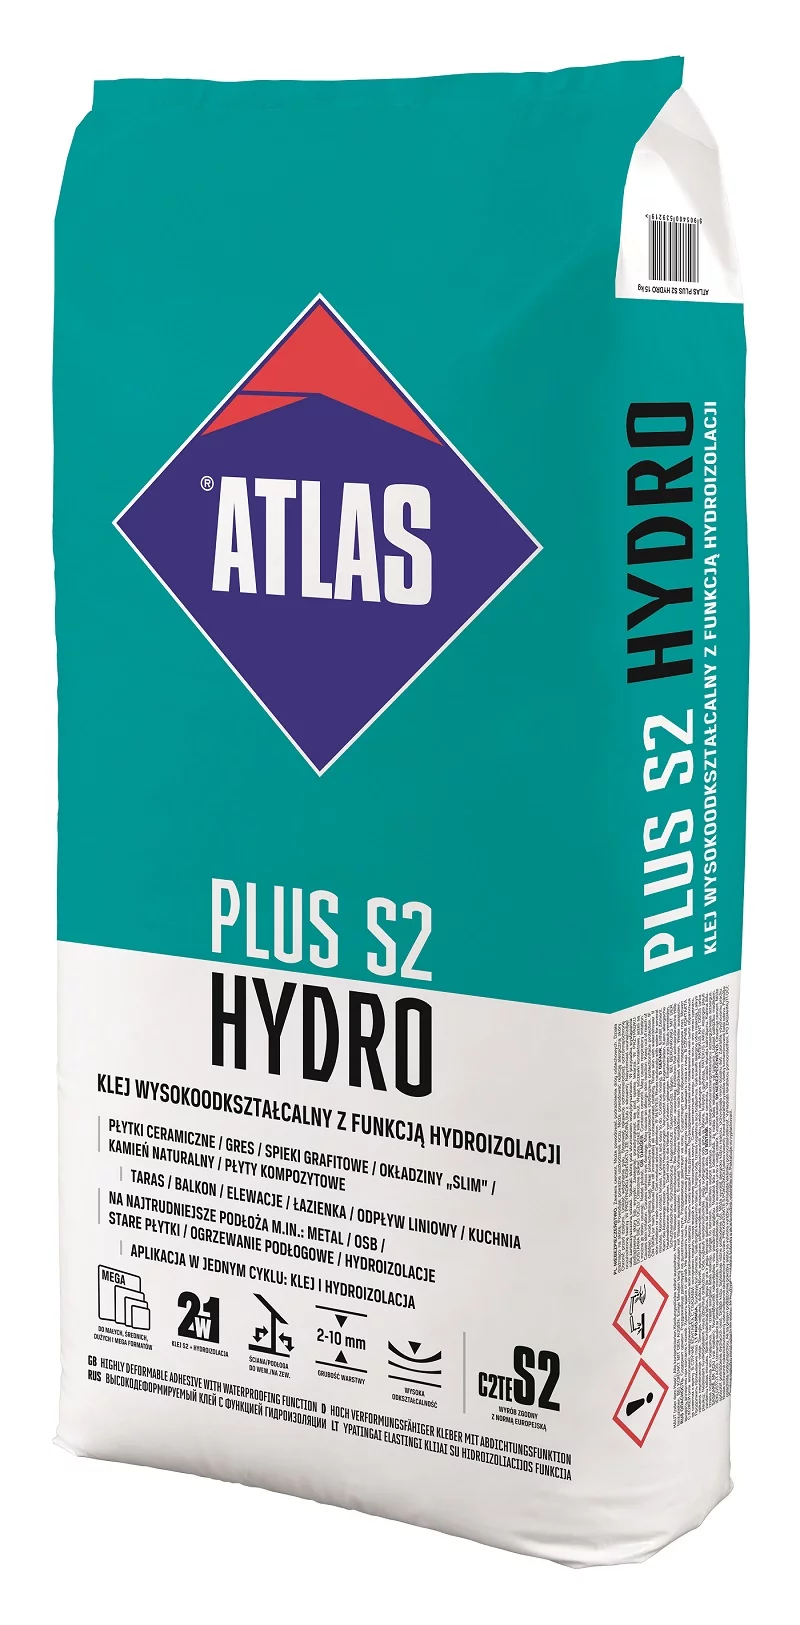 ATLAS PLUS S2 HYDRO, czyli wysokiej jakości klej z funkcją hydroizolacji